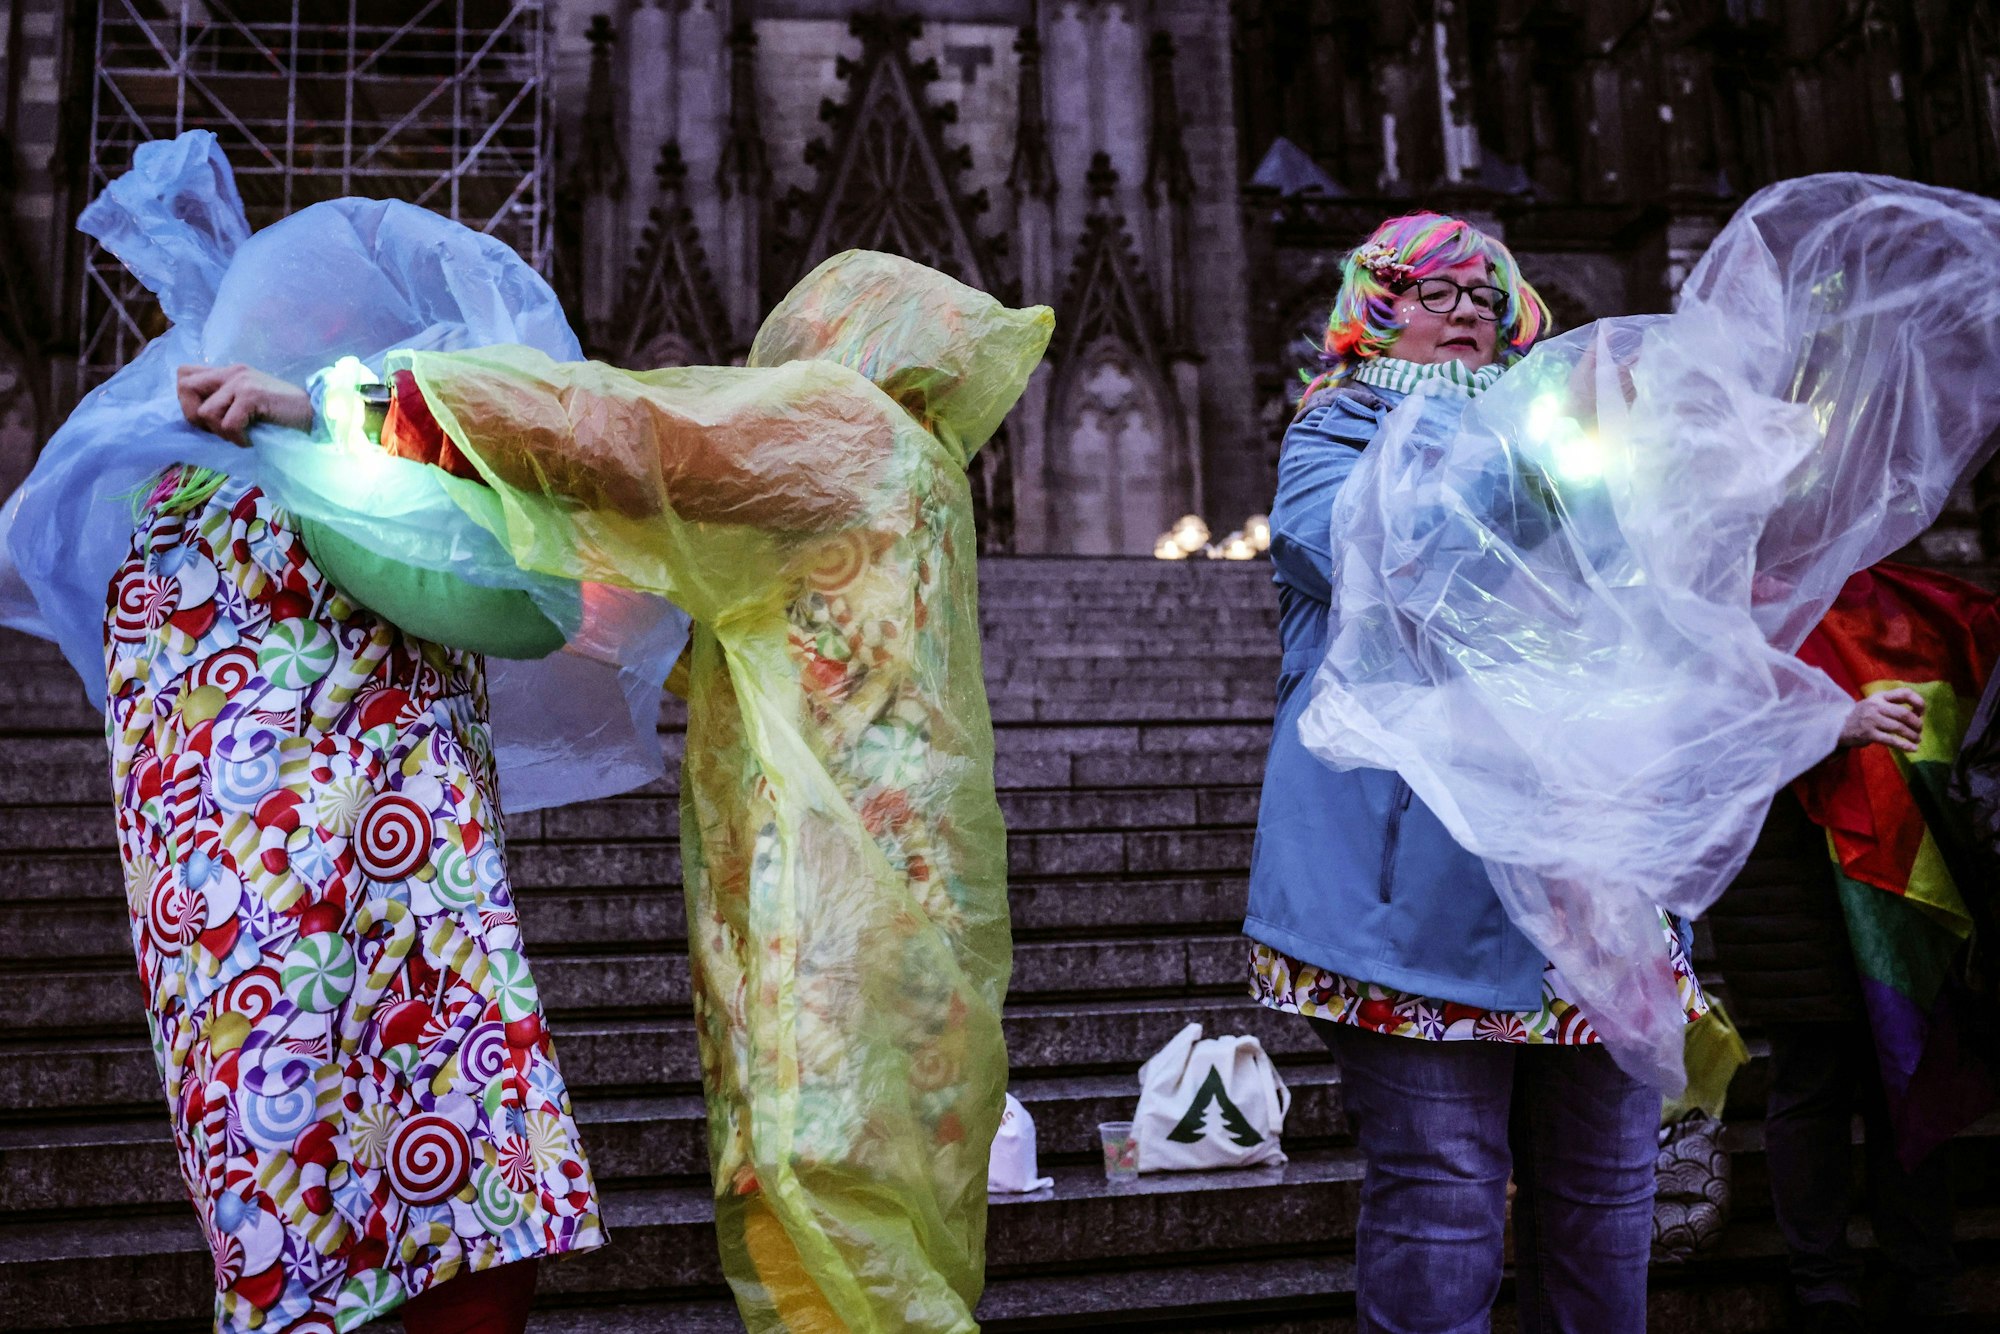 Karnevalisten ziehen sich am Dom einen Regenschutz über das Kostüm.